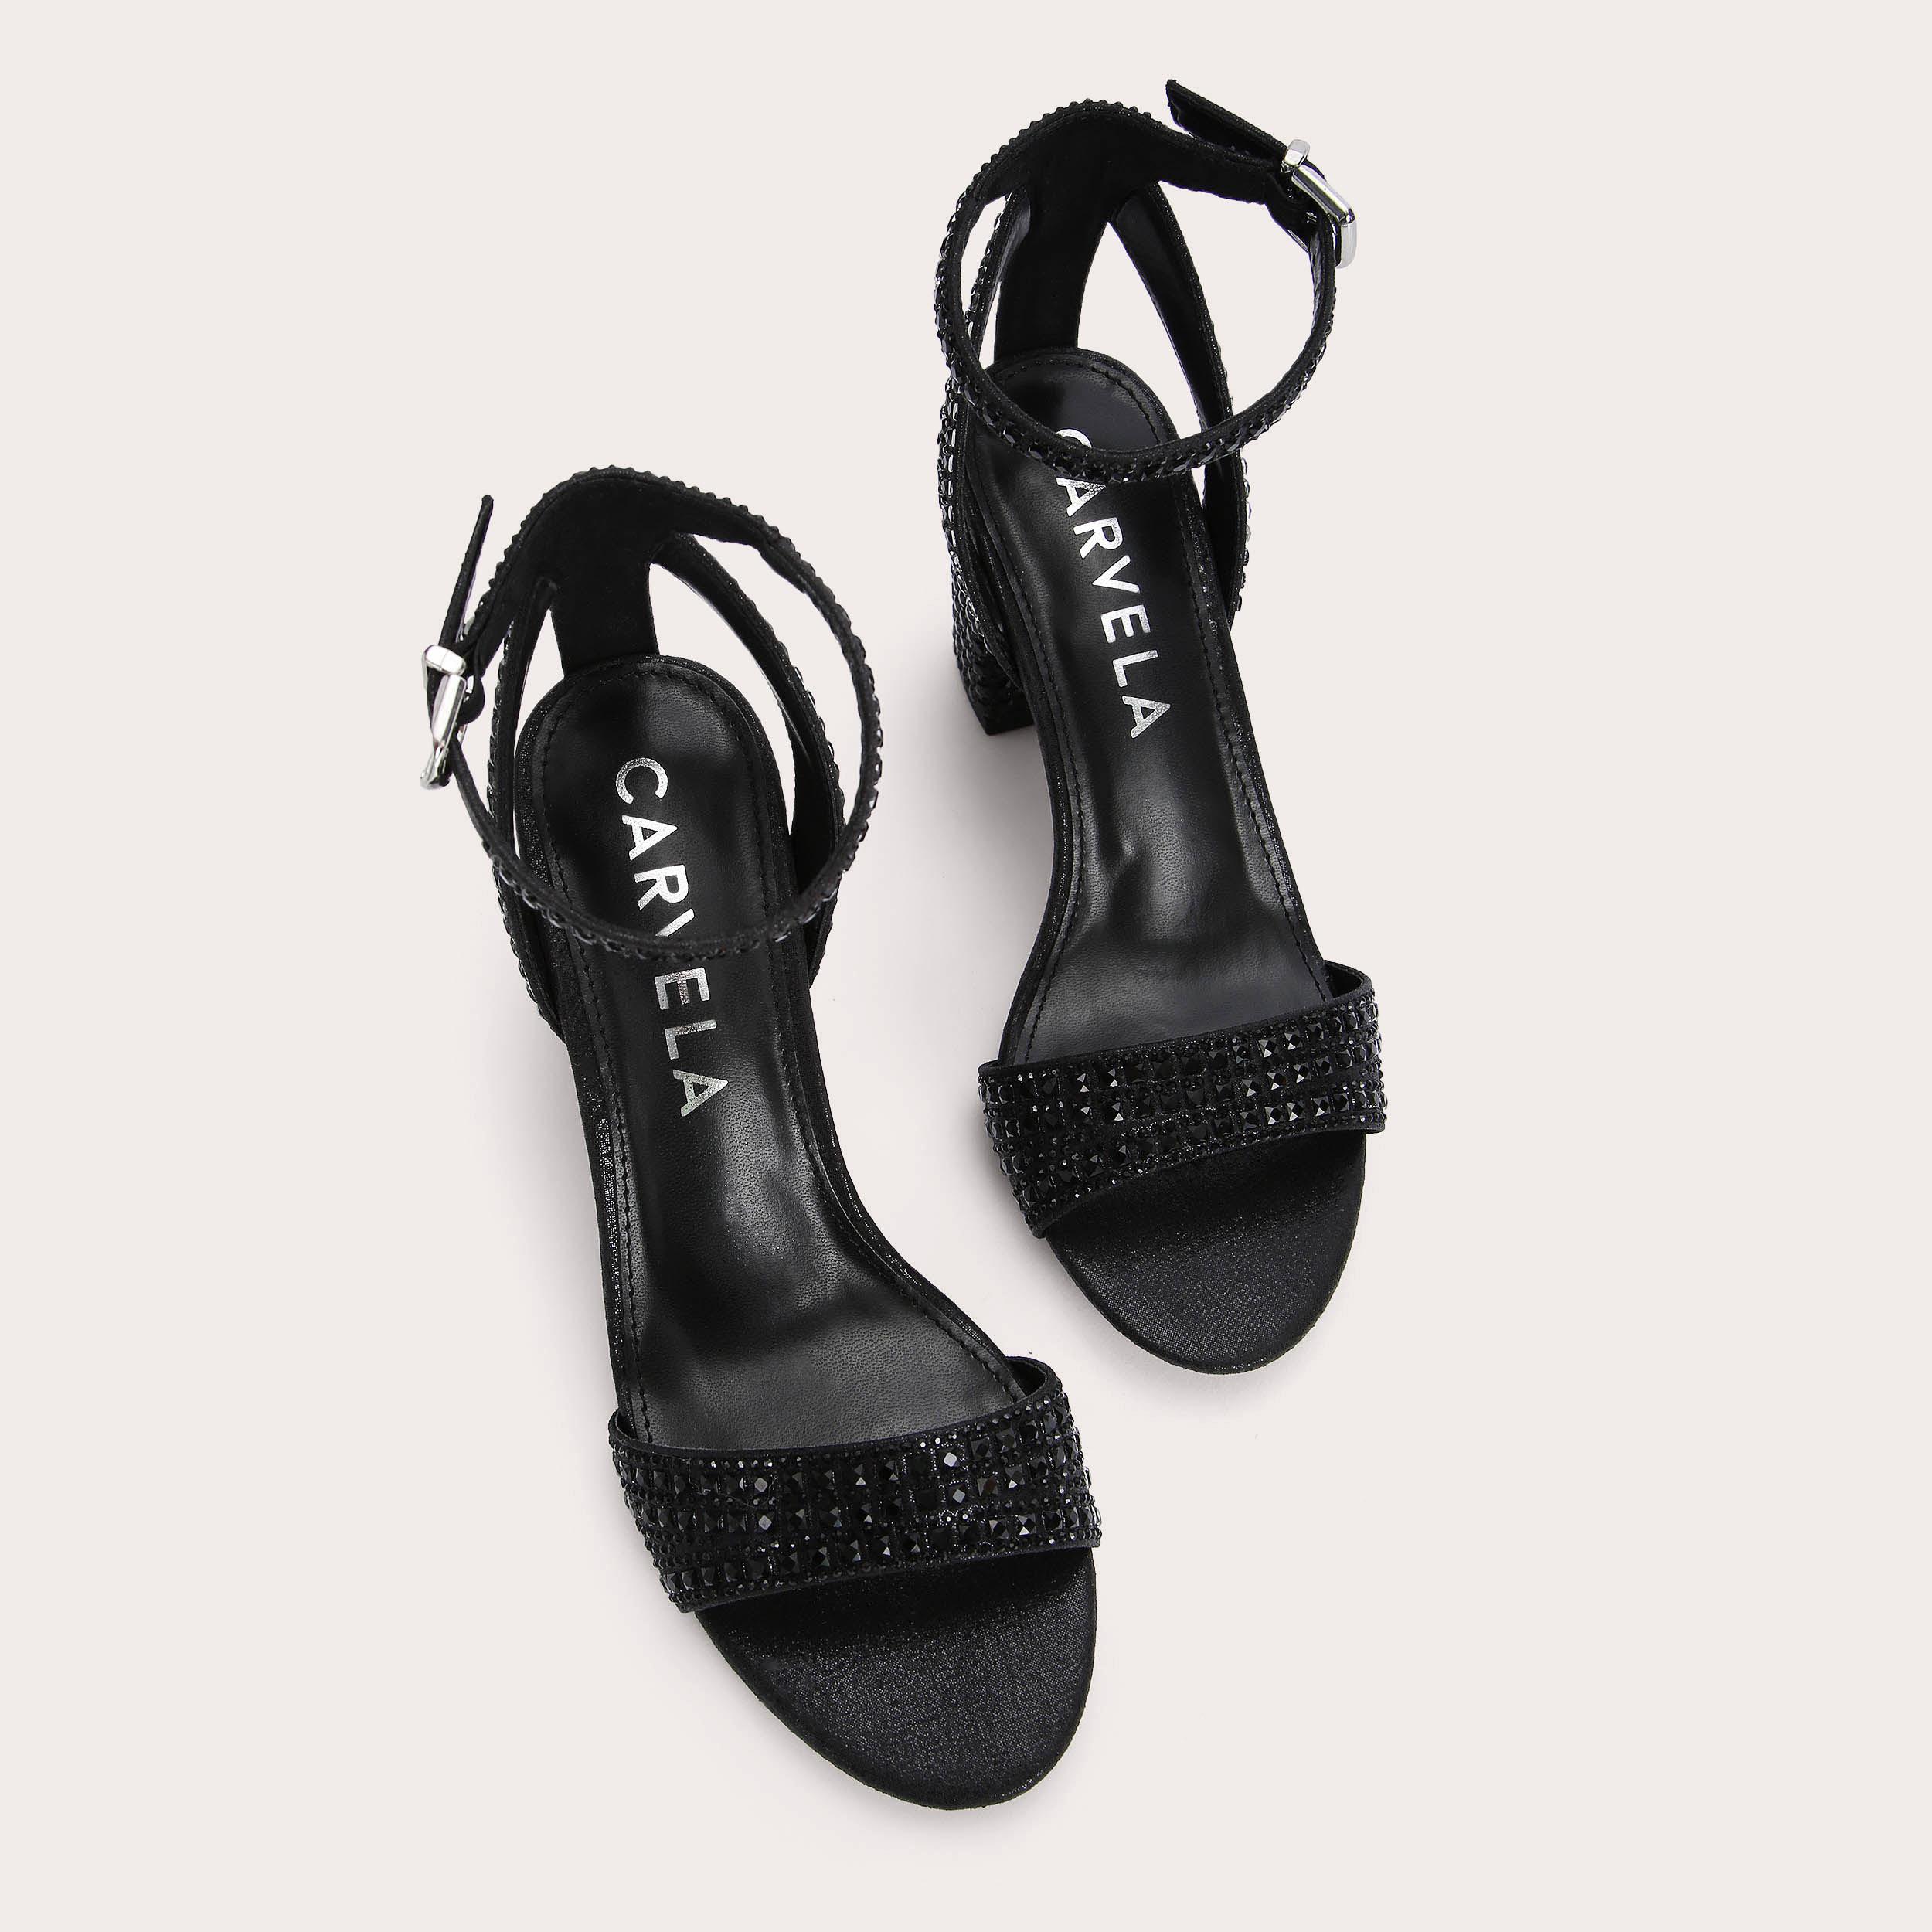 KIANNI Black Embellished Block Heel Sandals by CARVELA